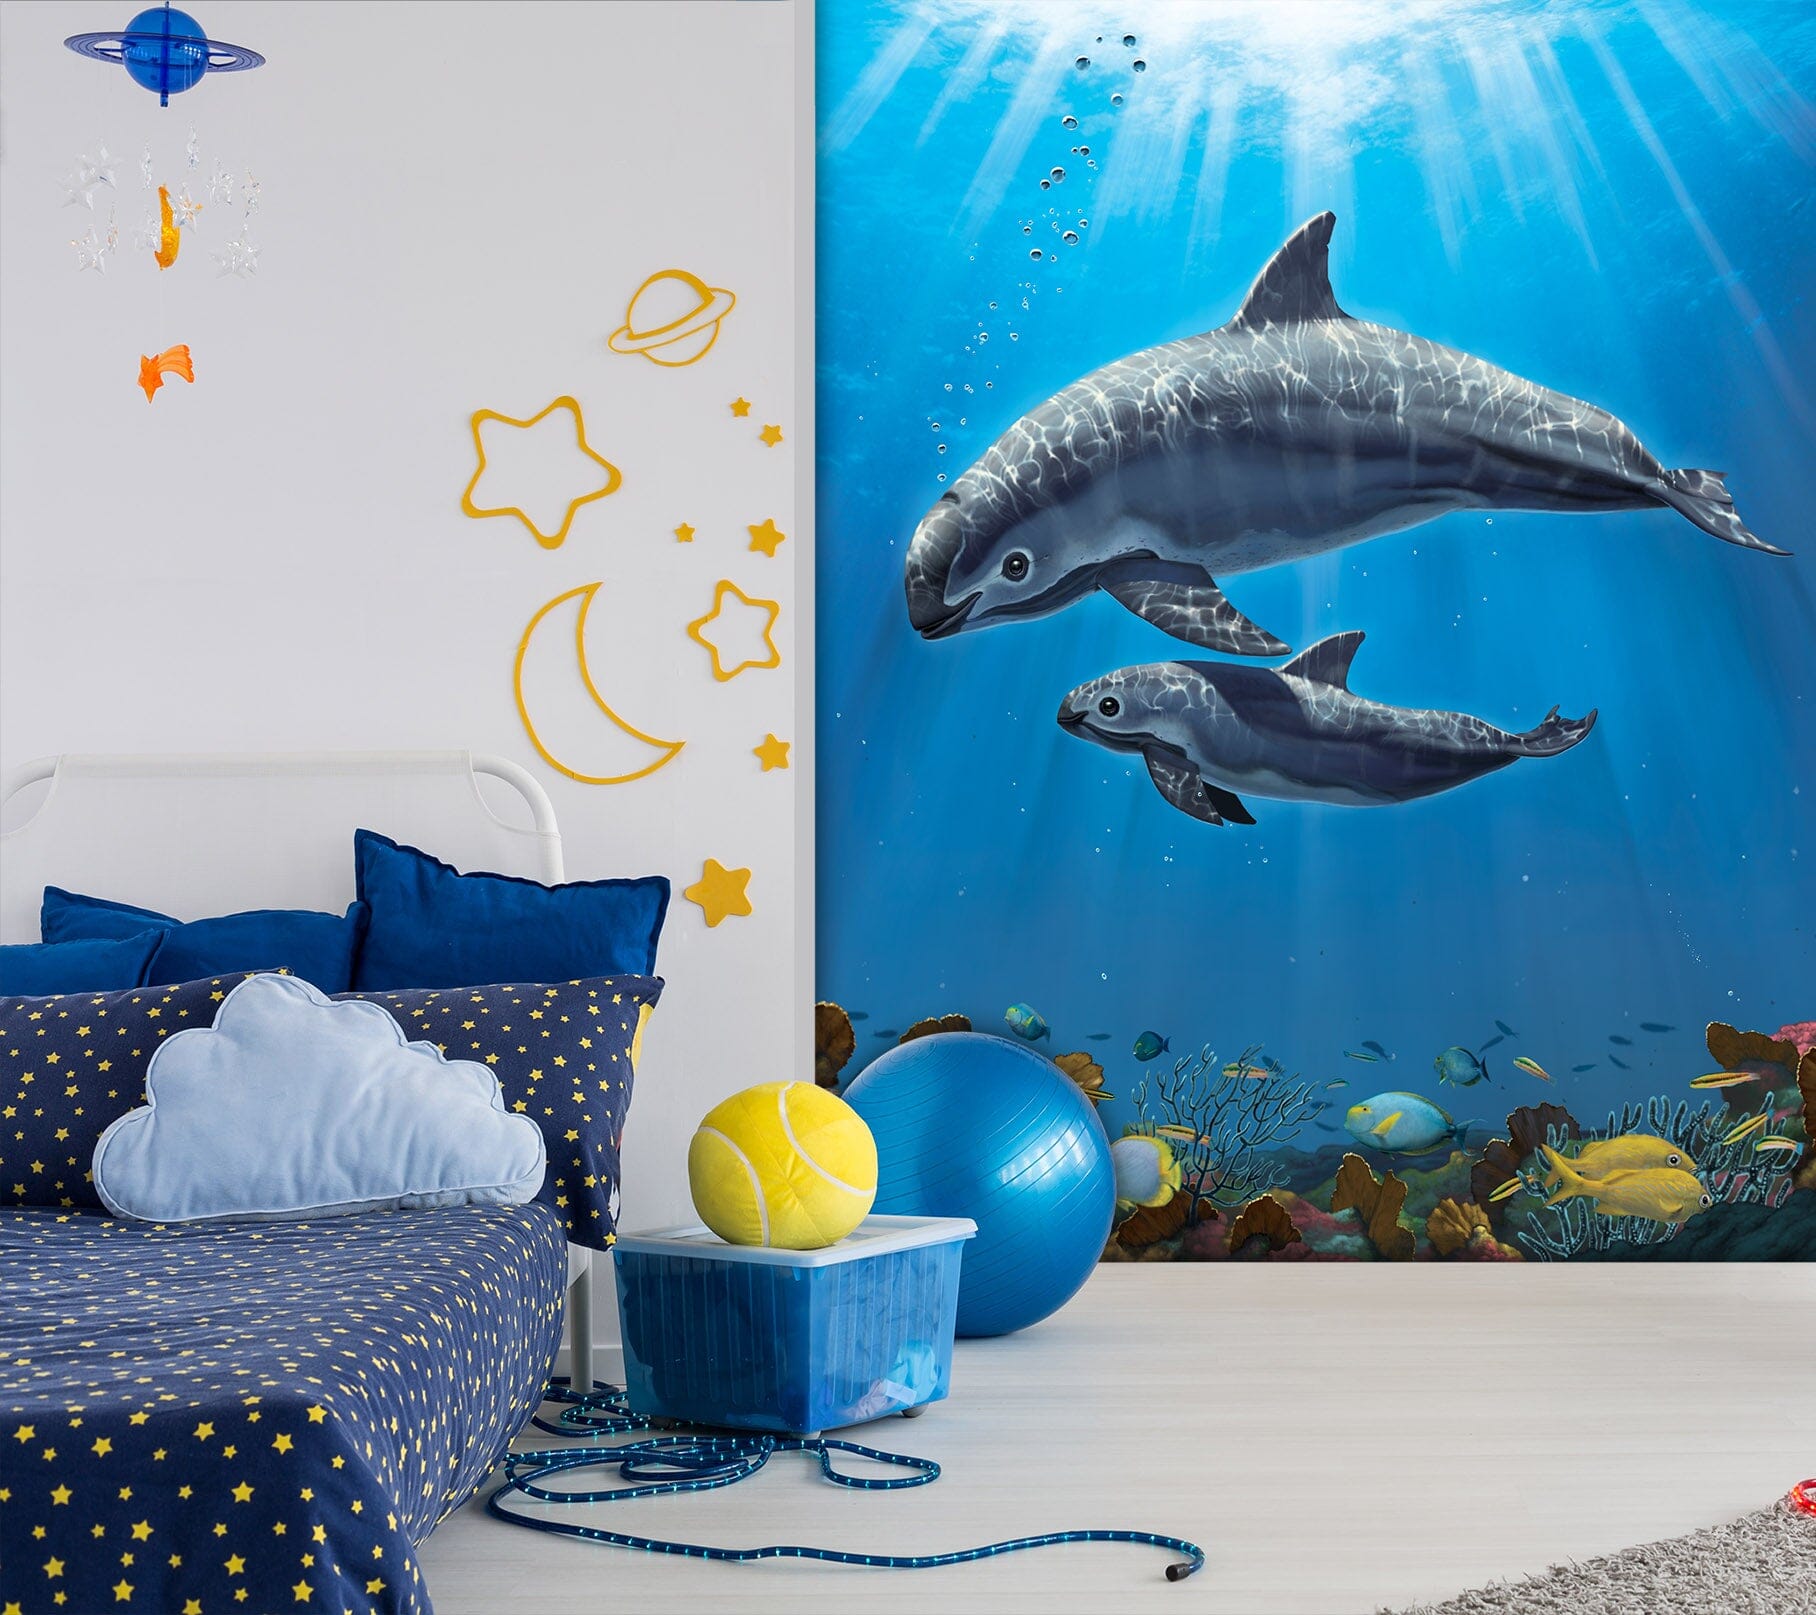 3D Dolphin Swimming 1568 Wall Murals Exclusive Designer Vincent Wallpaper AJ Wallpaper 2 